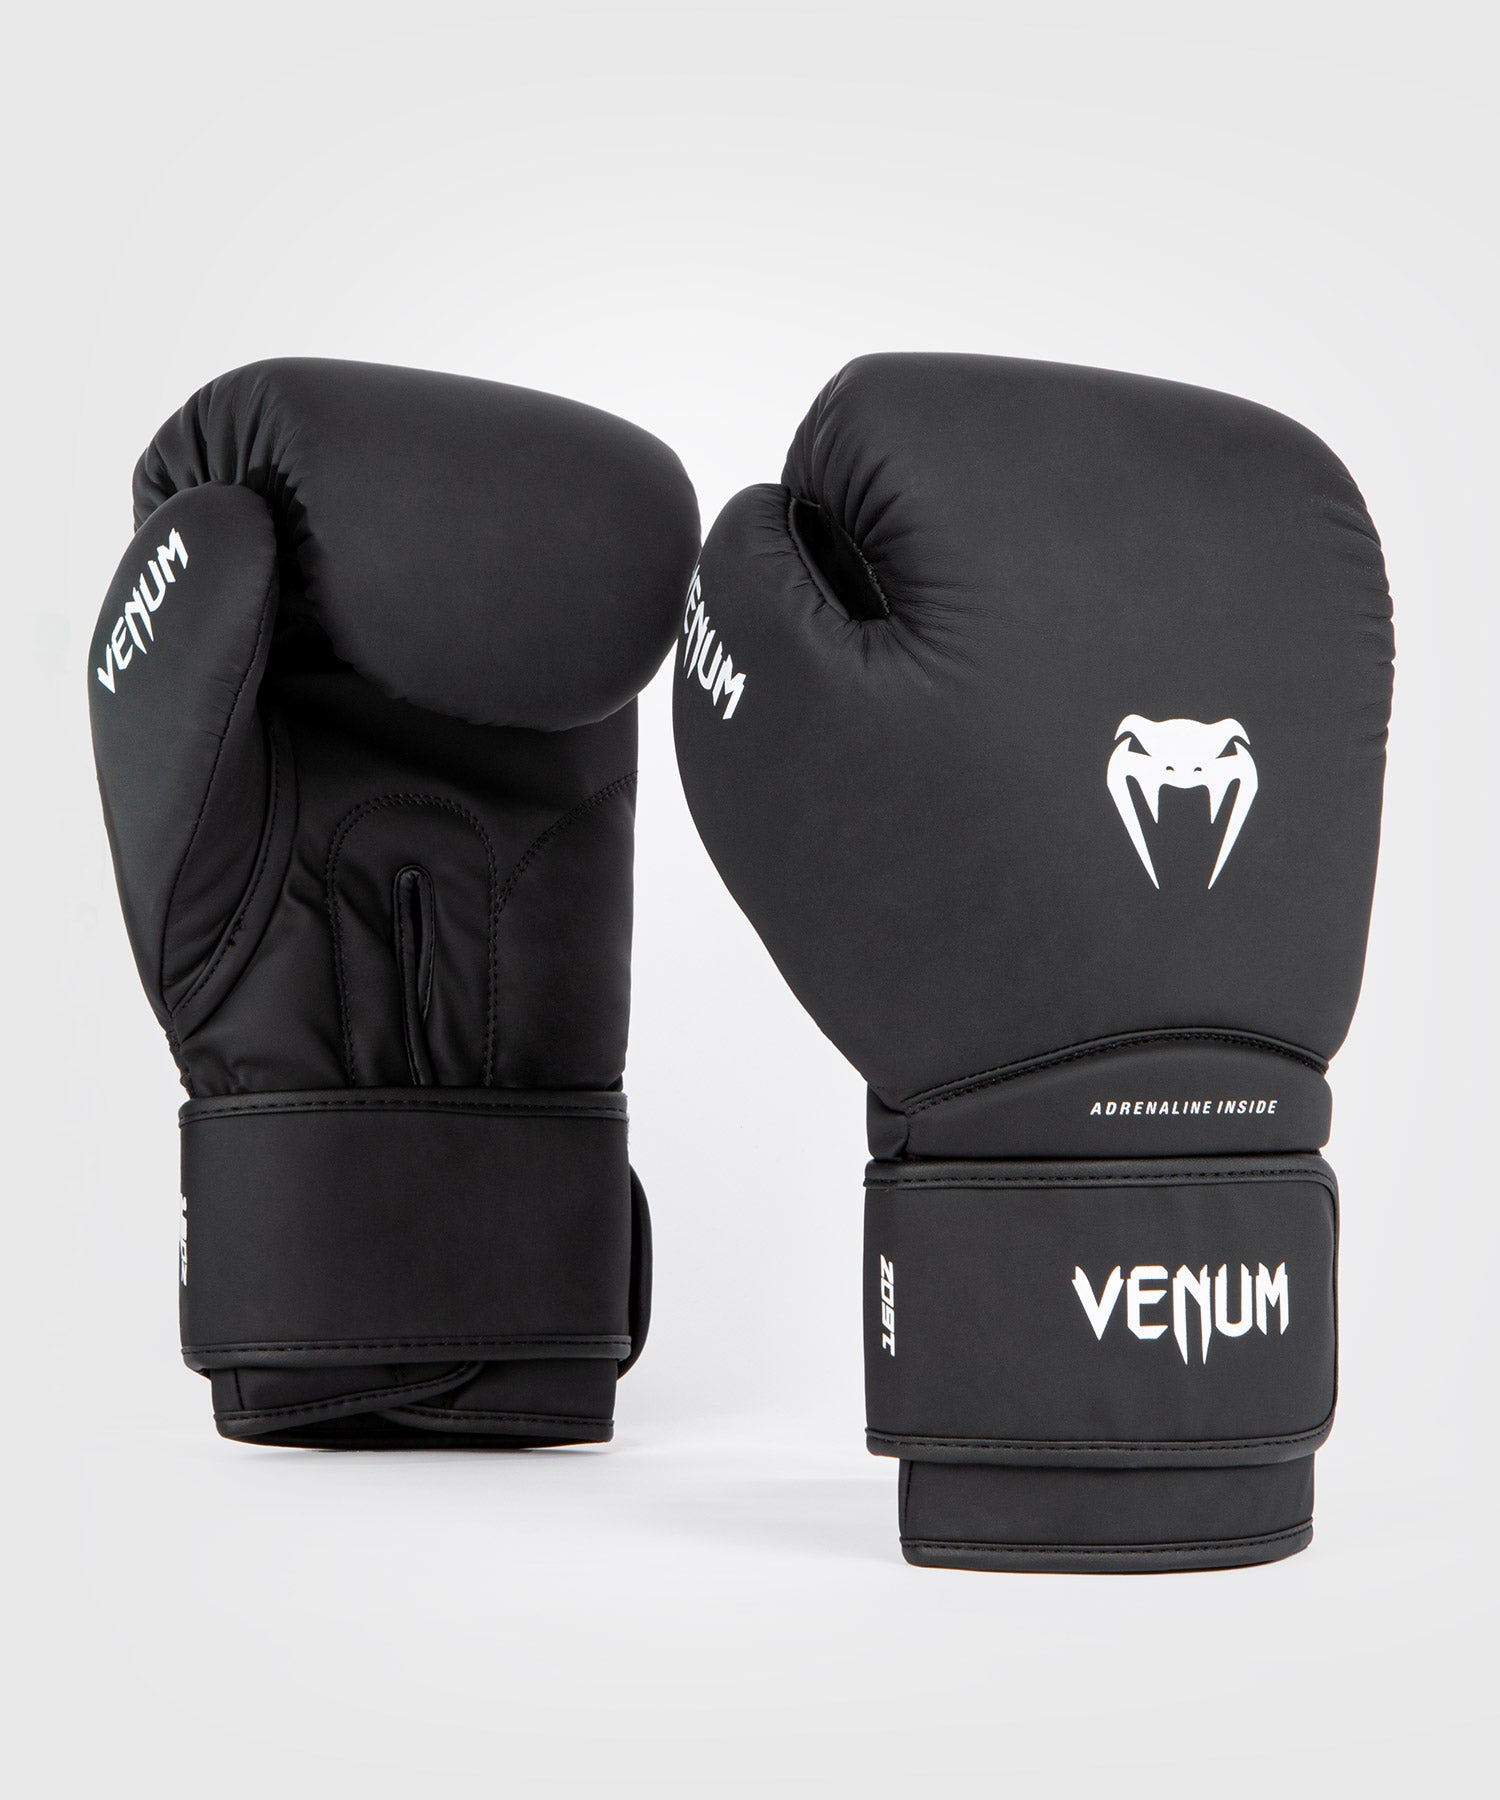 Venum Contender - Guantes de Boxeo MMA UFC Muay Thai Kick Boxing